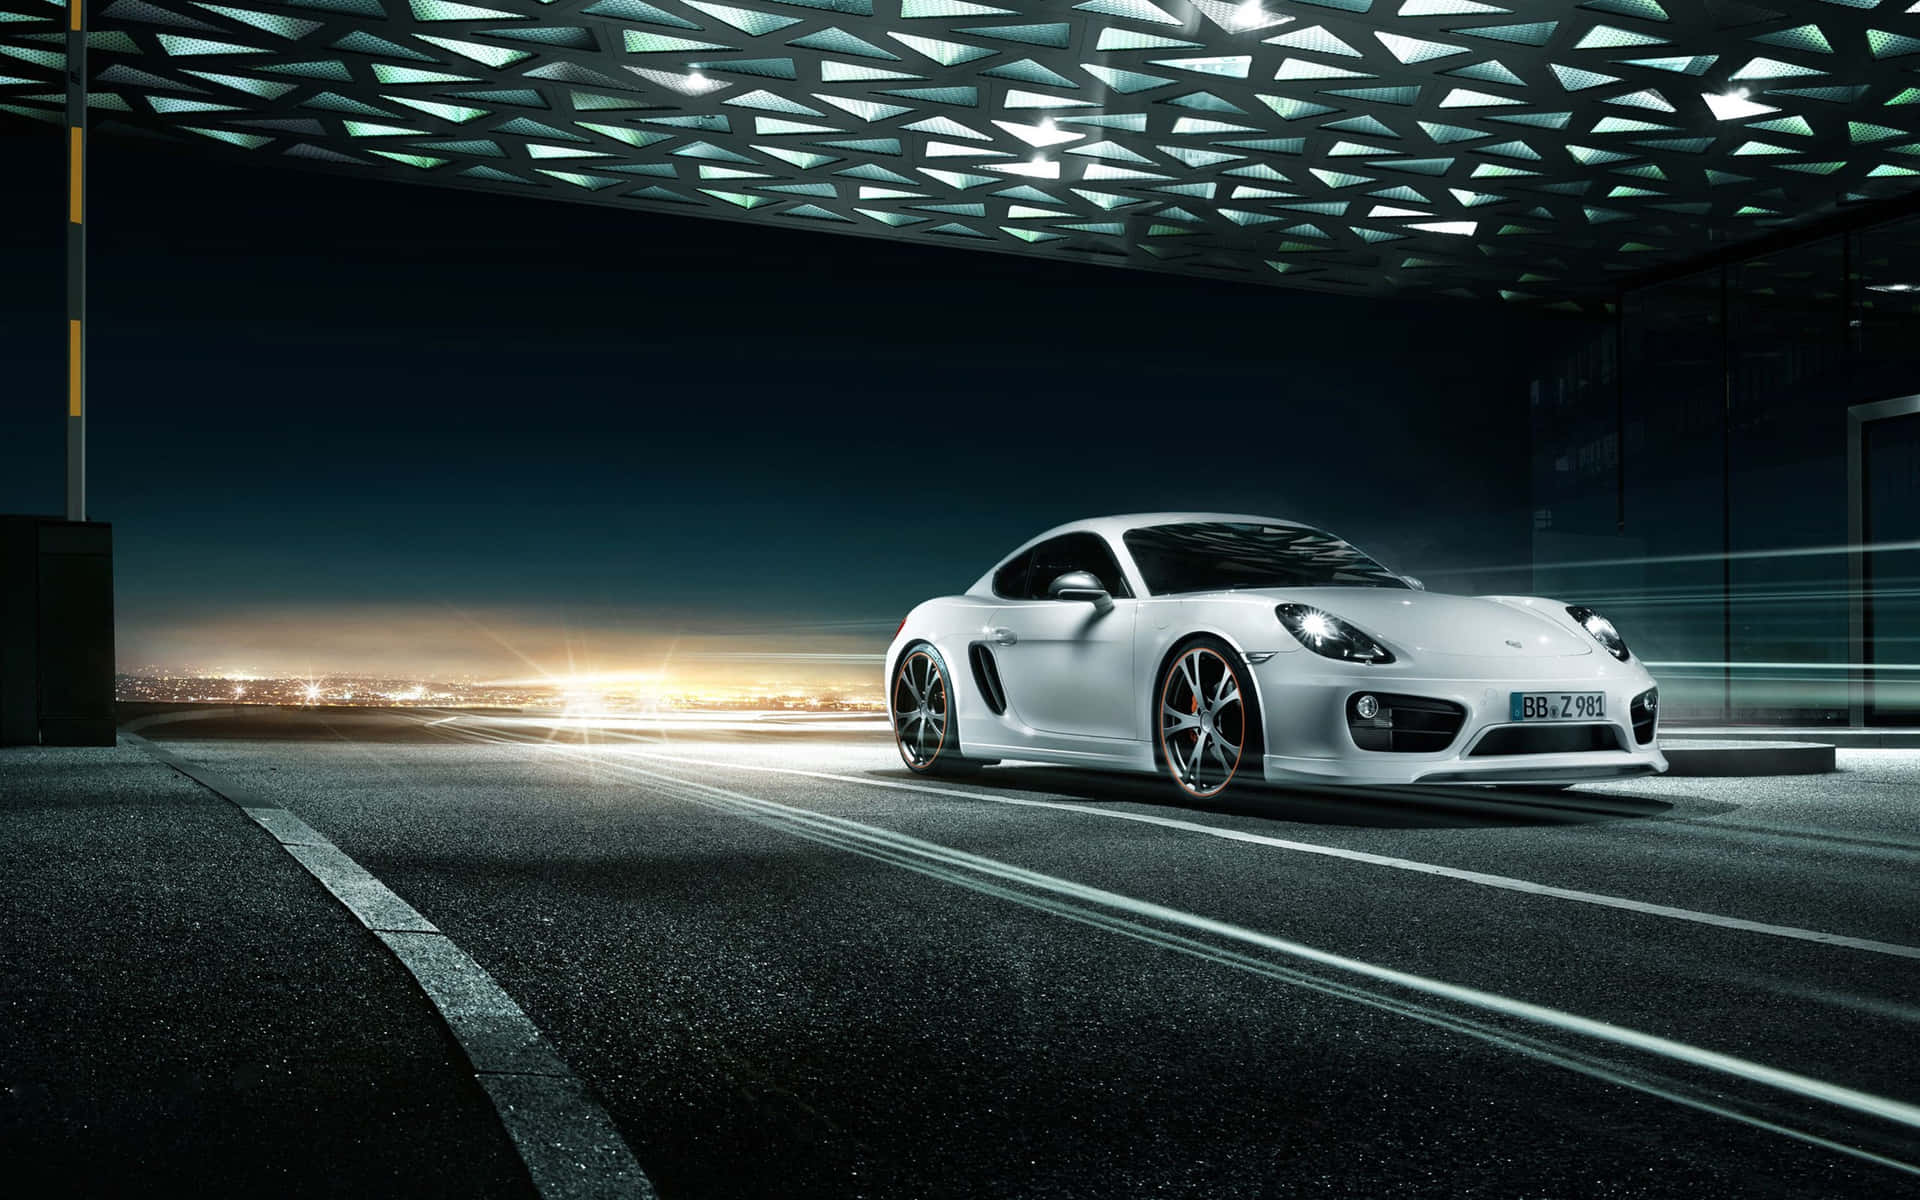 4k Ultra Hd Porsche Wallpaper